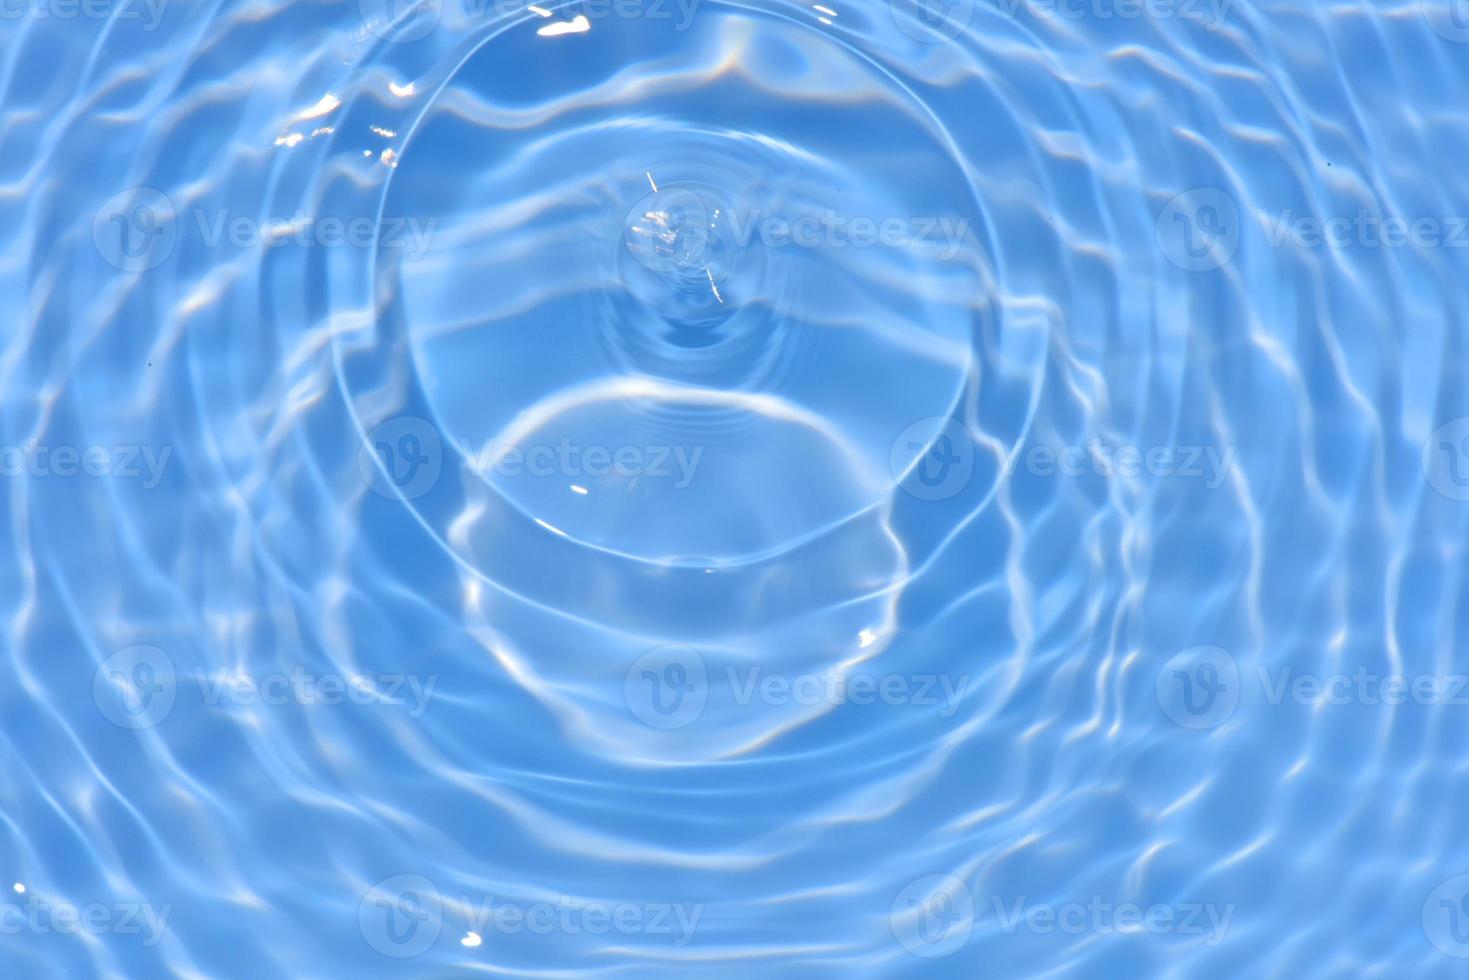 defocus verschwommene, transparente, blaue, klare, ruhige wasseroberflächenstruktur mit spritzern und blasen. trendiger abstrakter naturhintergrund. wasserwellen im sonnenlicht mit kopierraum. blaues Wasser glänzt foto